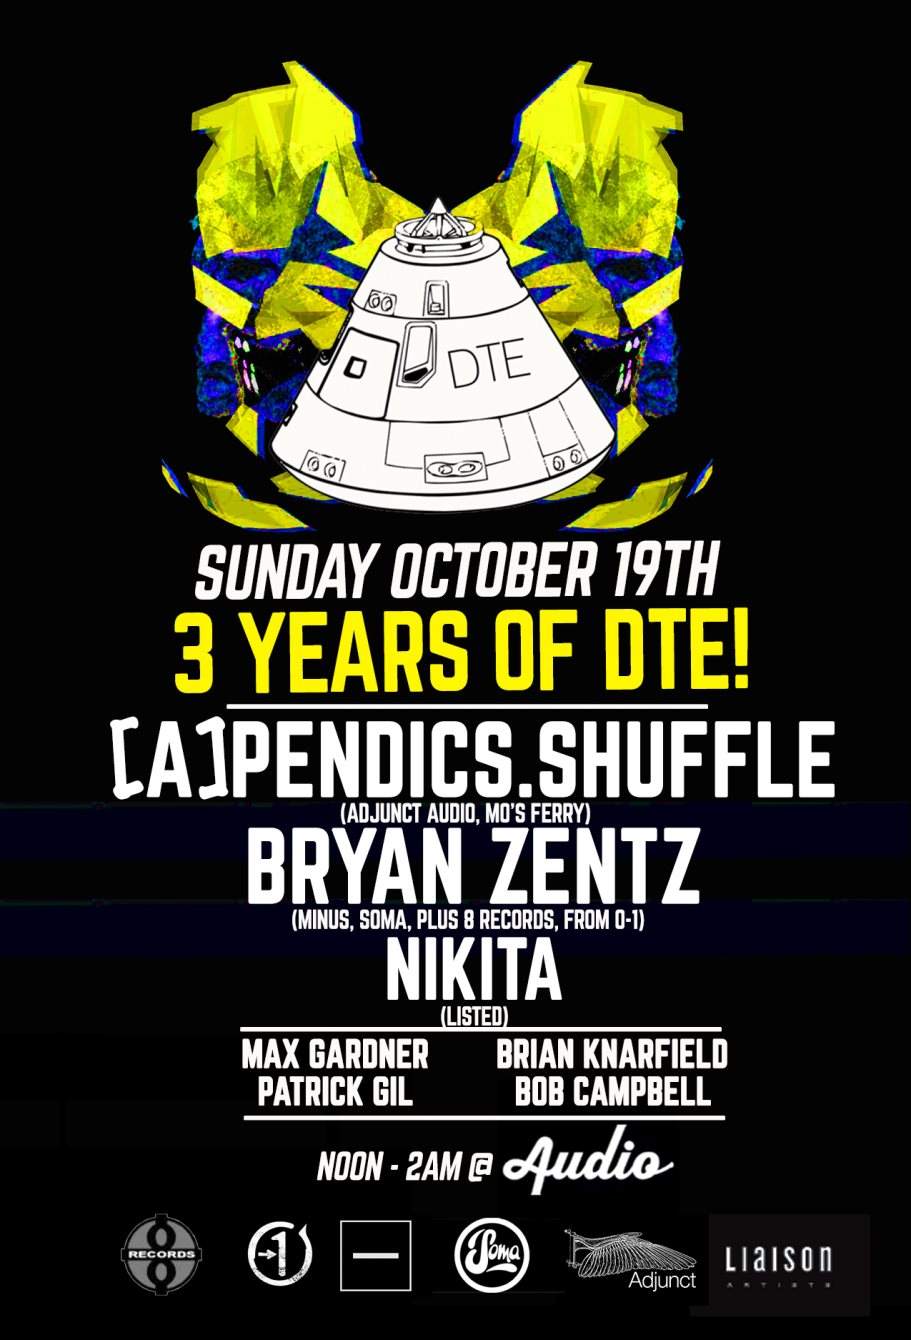 DTE 3 Year Anniversary with [a]pendics.Shuffle, Bryan Zentz, Nikita - フライヤー表